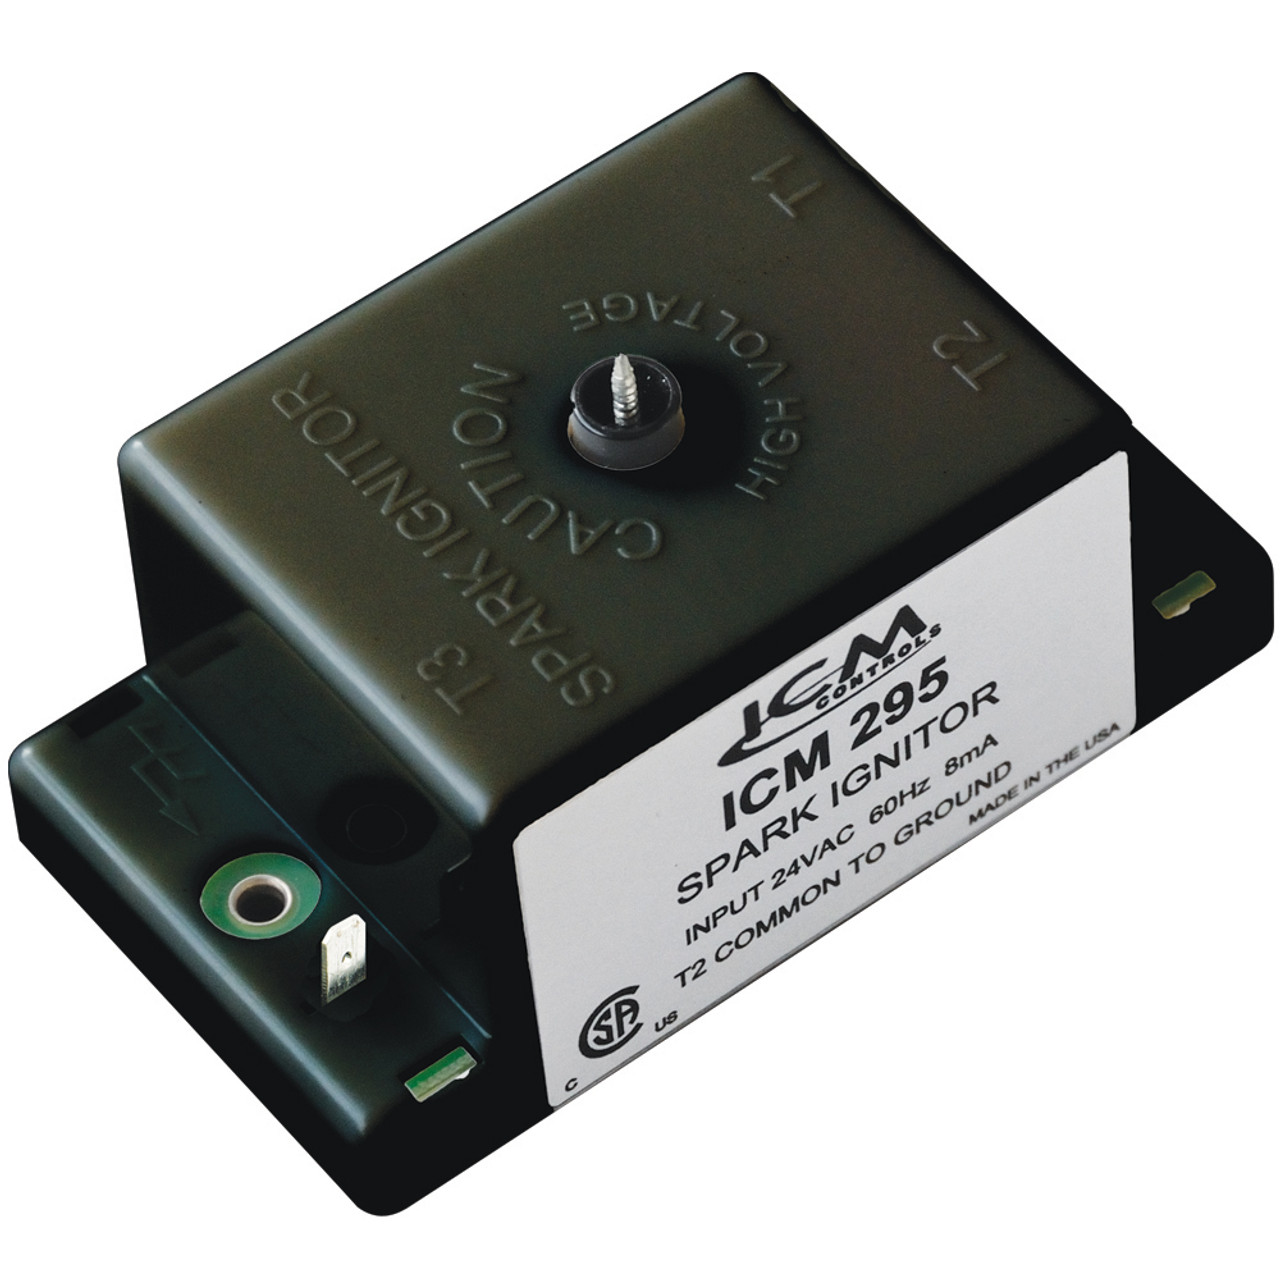 ICM295 Gas Ignition Control Board